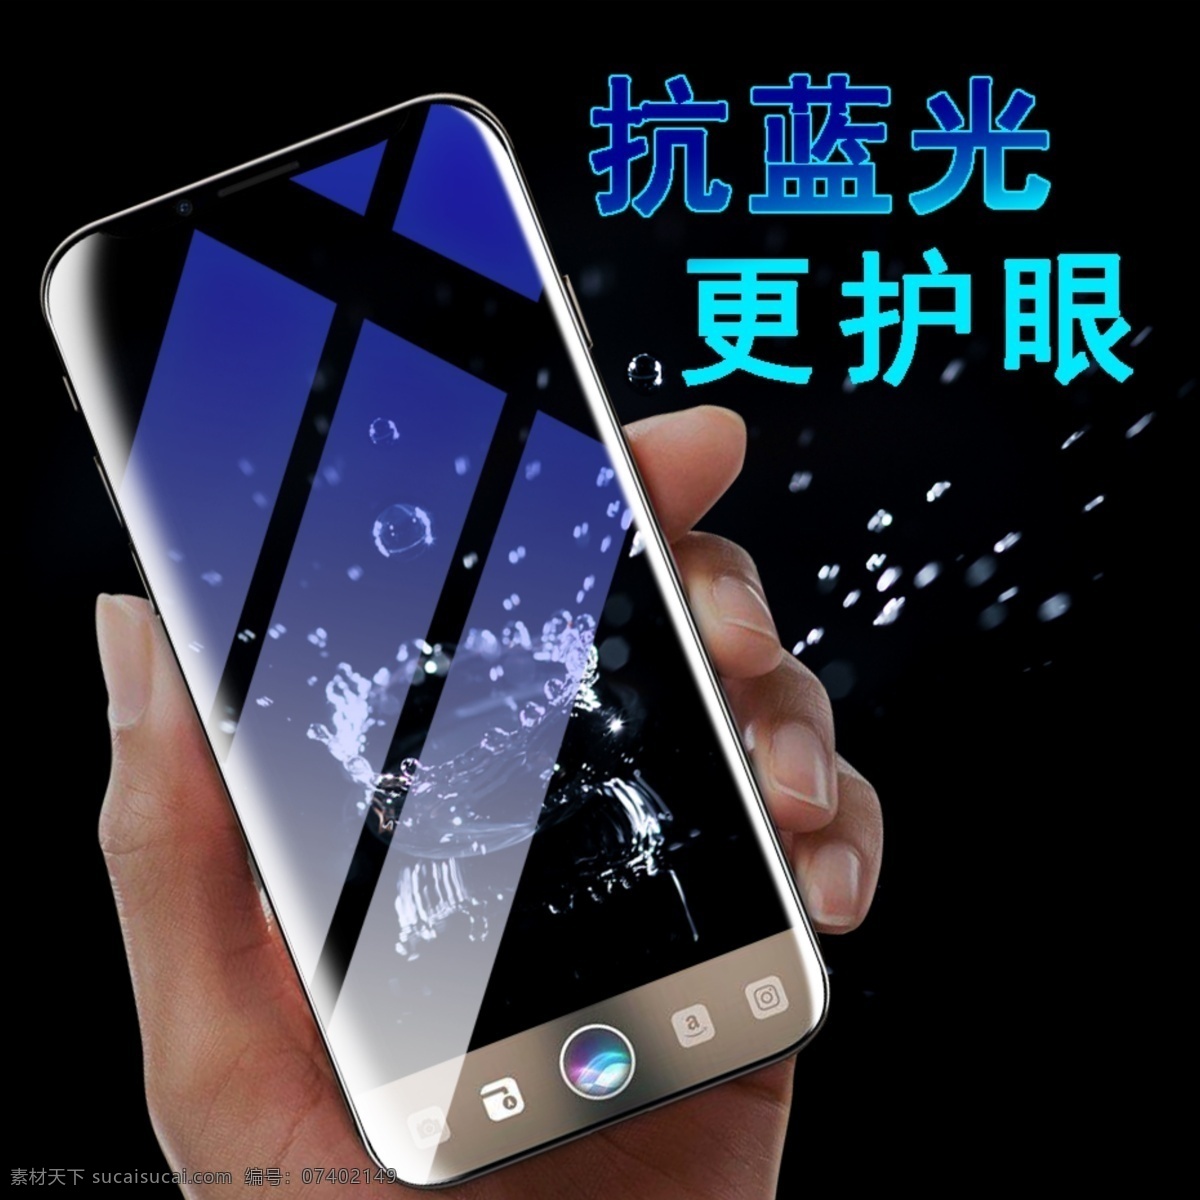 超清 手机钢化膜 苹果 6s 6p 6sp 7p 8p 手机膜 超薄 清透 抗蓝光 数码产品 现代科技